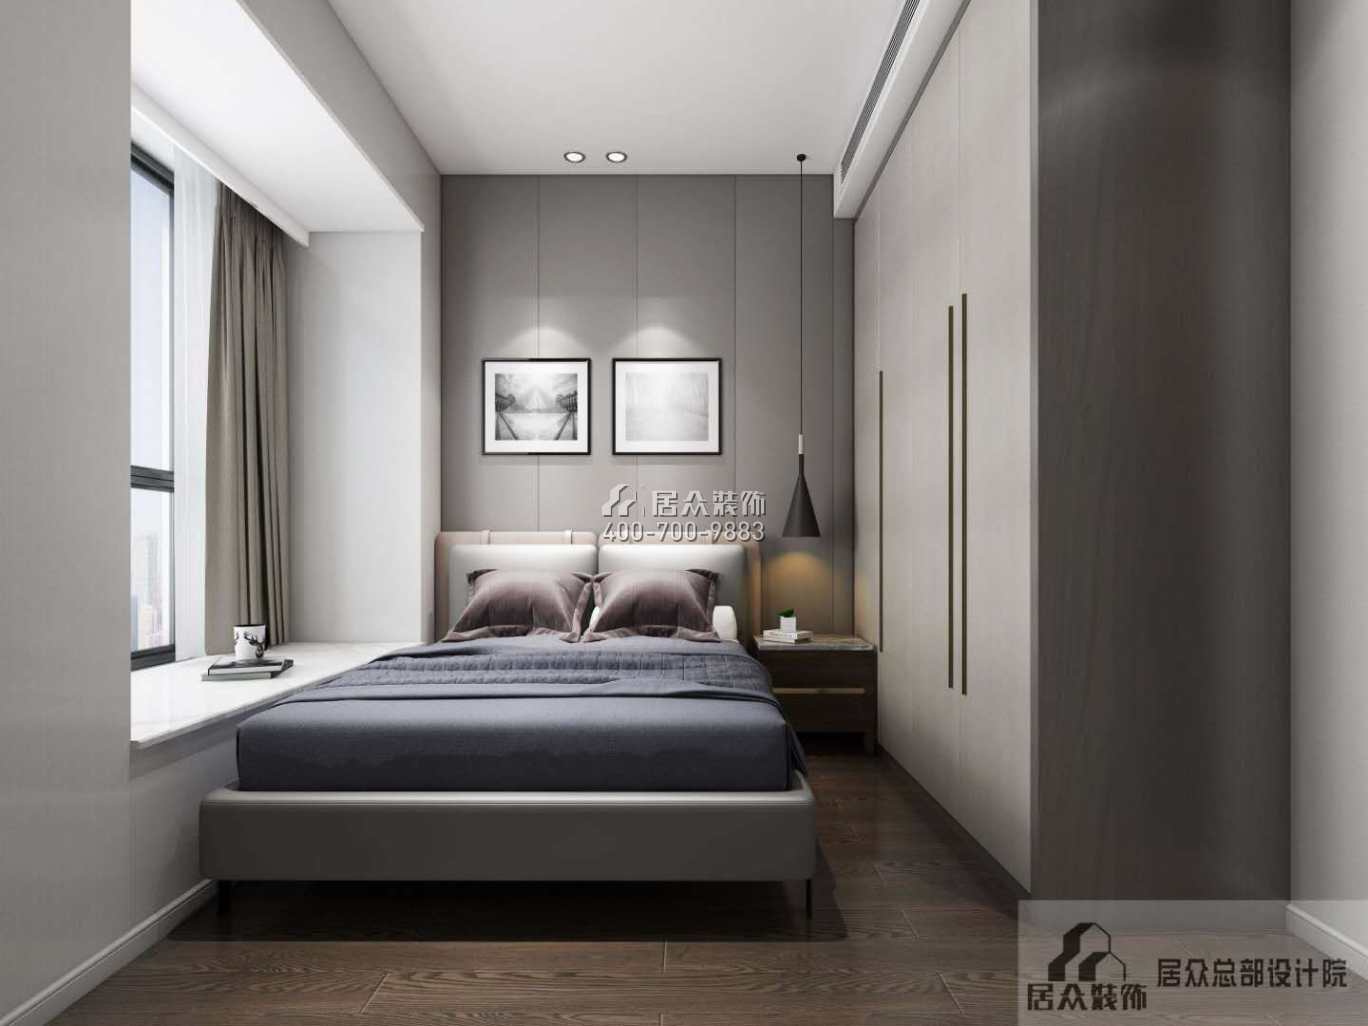 銀湖藍山潤園二期120平方米現代簡約風格平層戶型臥室裝修效果圖